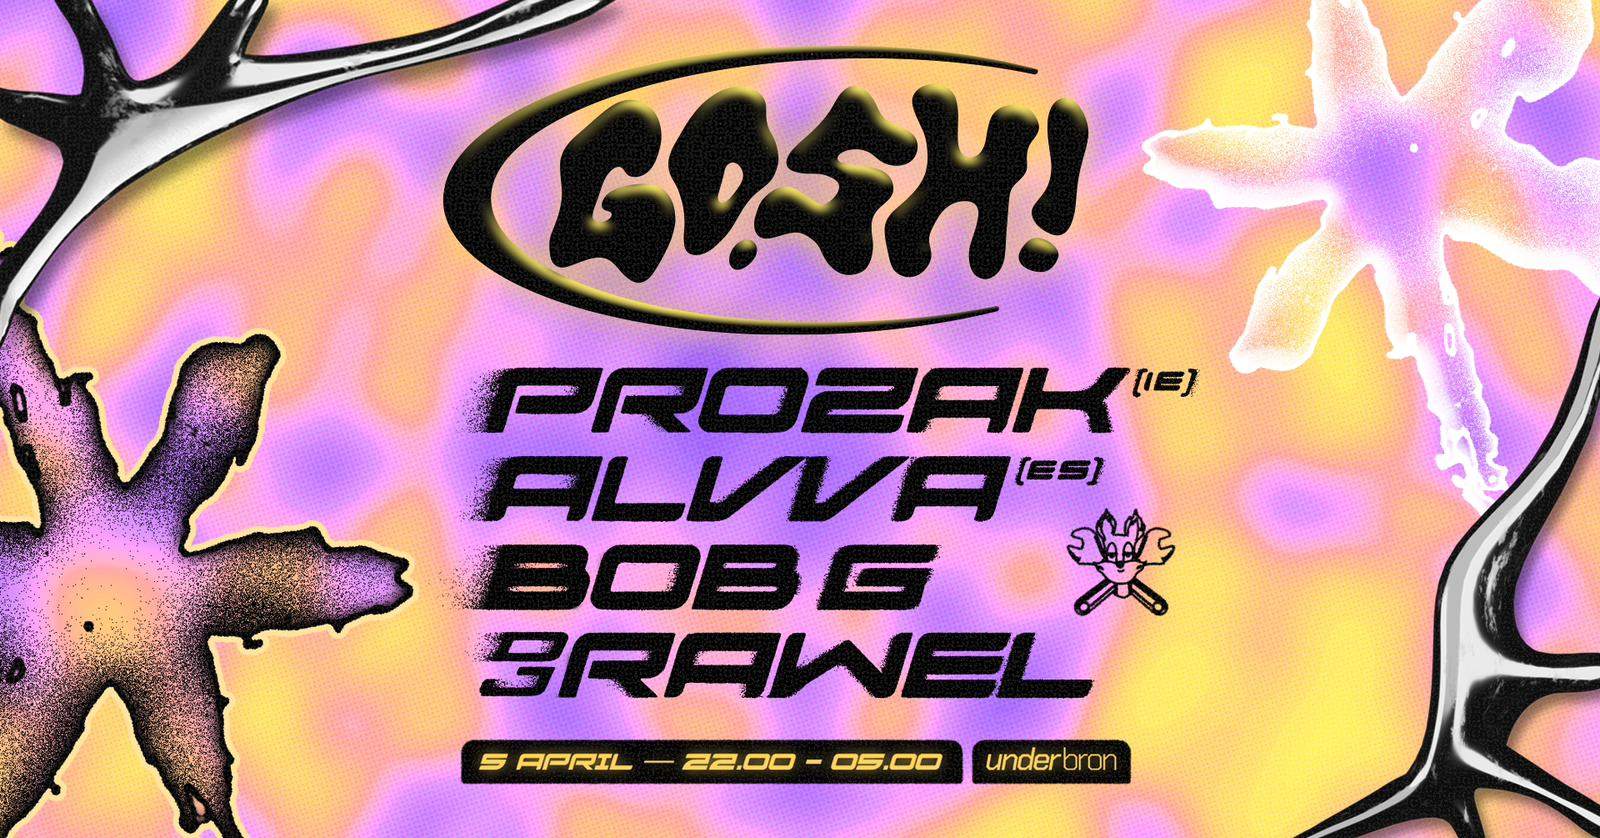 GOSH! Prozak, Alvva, Bob G, DJ Rawel - Página frontal